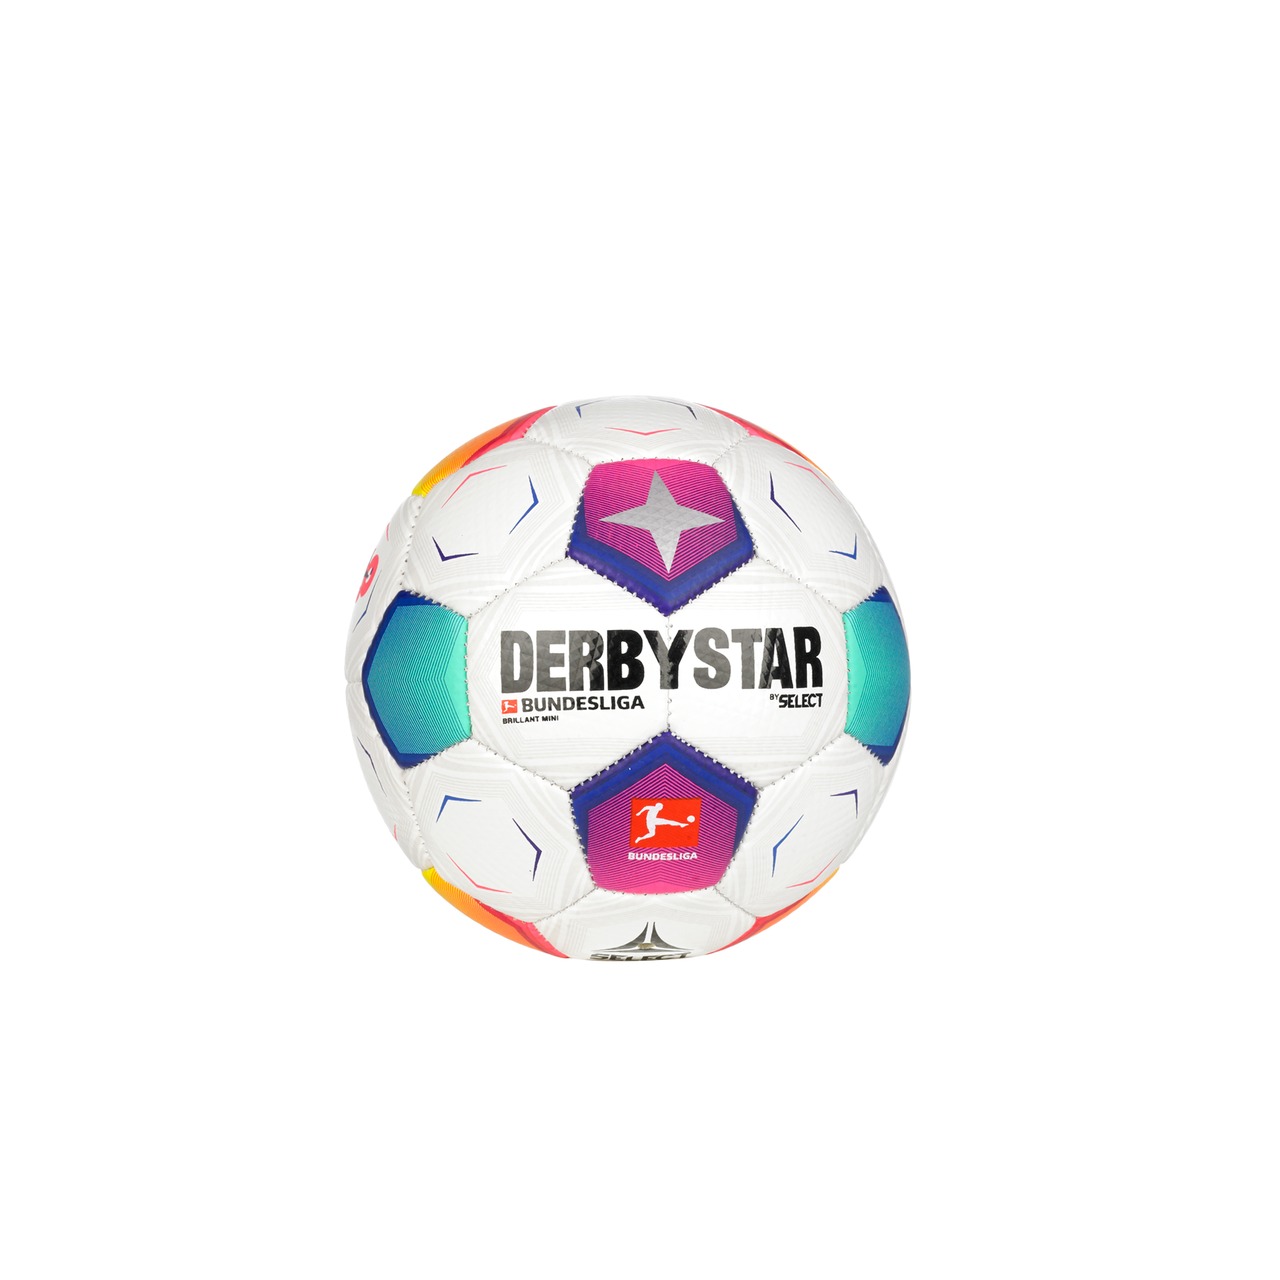 ダービースター DERBYSTAR サッカーボール MINIBALL Bundesliga V23 47cm